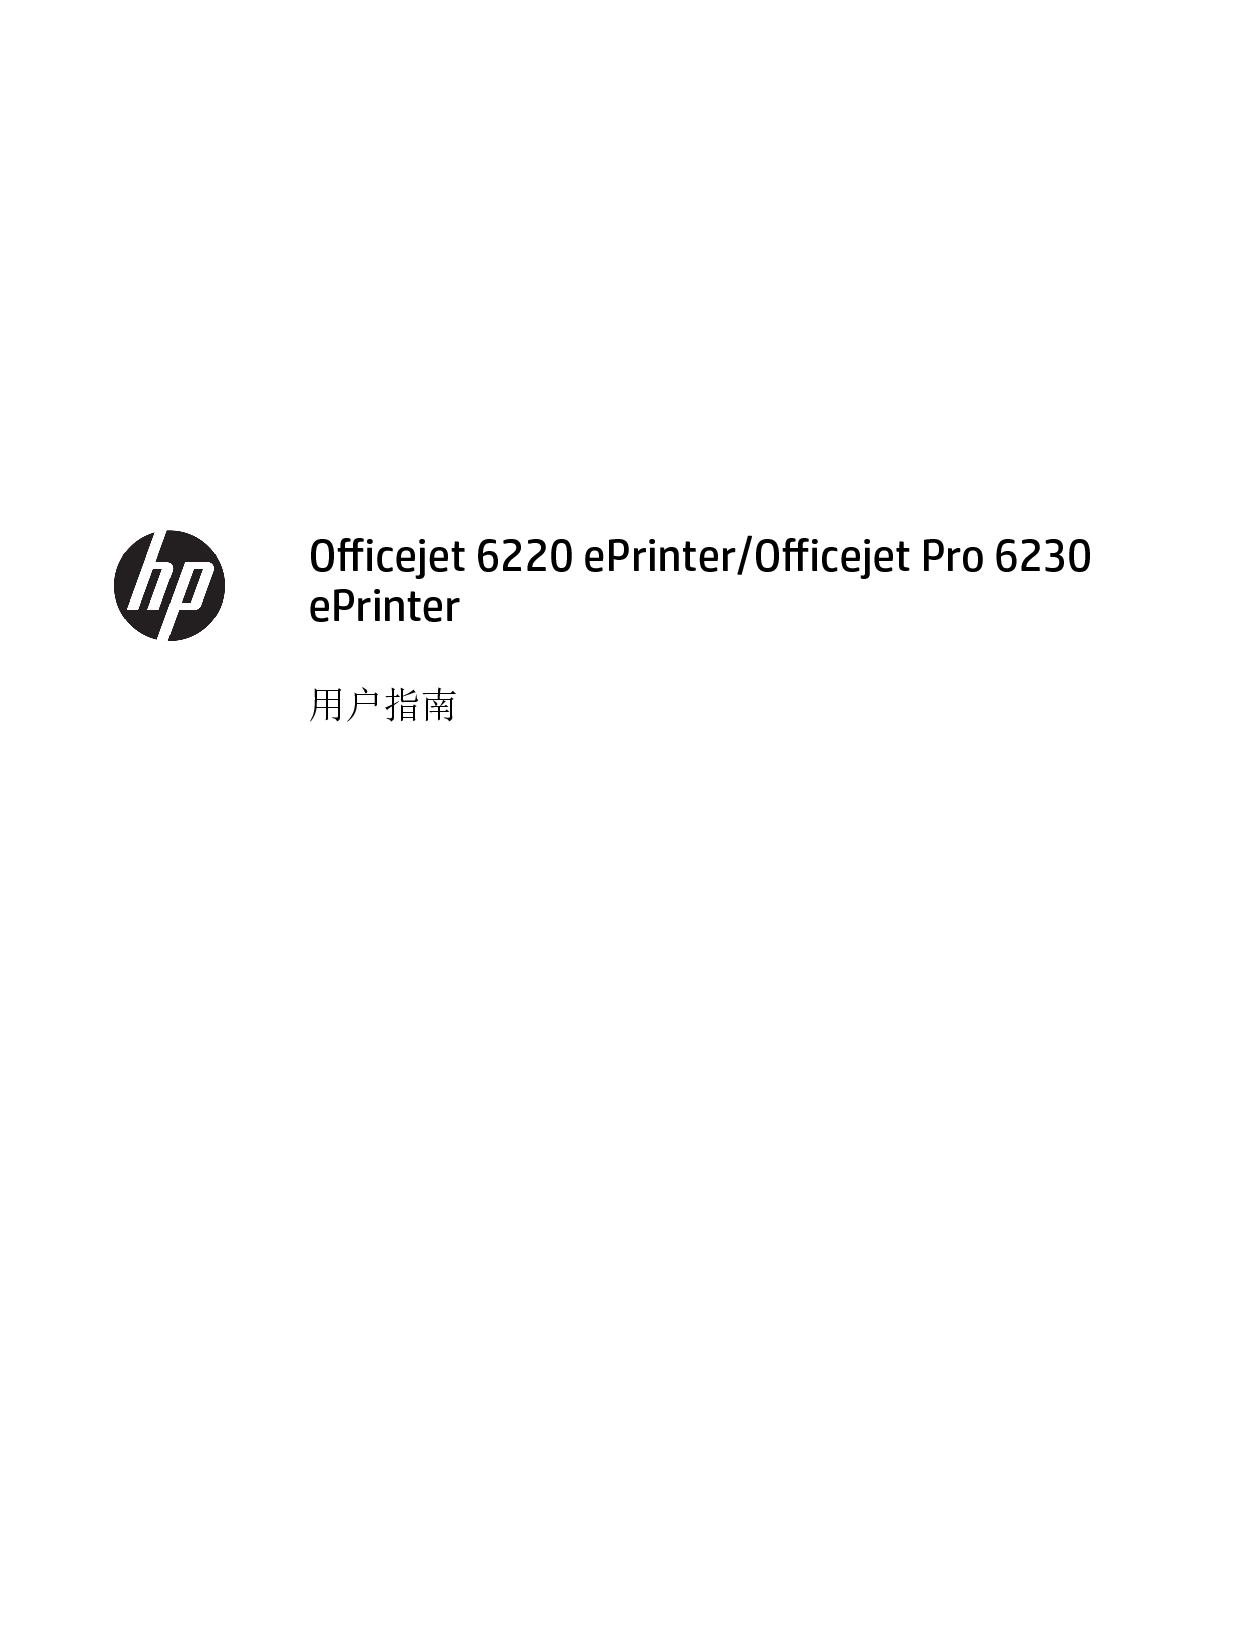 惠普 HP OfficeJet 6220 ePrinter 用户指南 封面